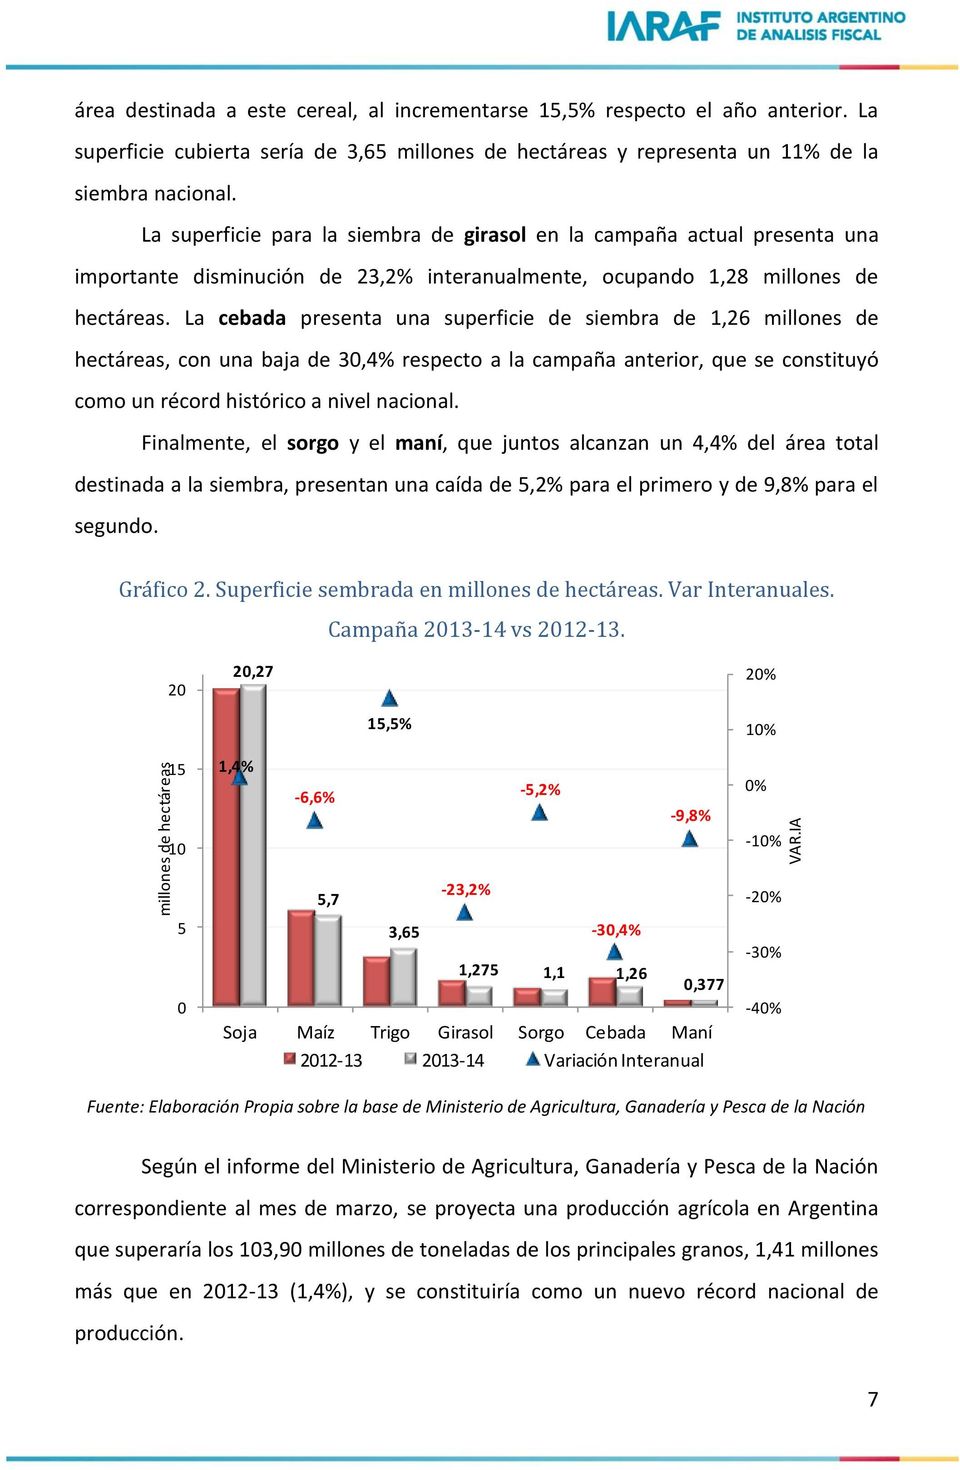 La superficie para la siembra de girasol en la campaña actual presenta una importante disminución de 23,2% interanualmente, ocupando 1,28 millones de hectáreas.